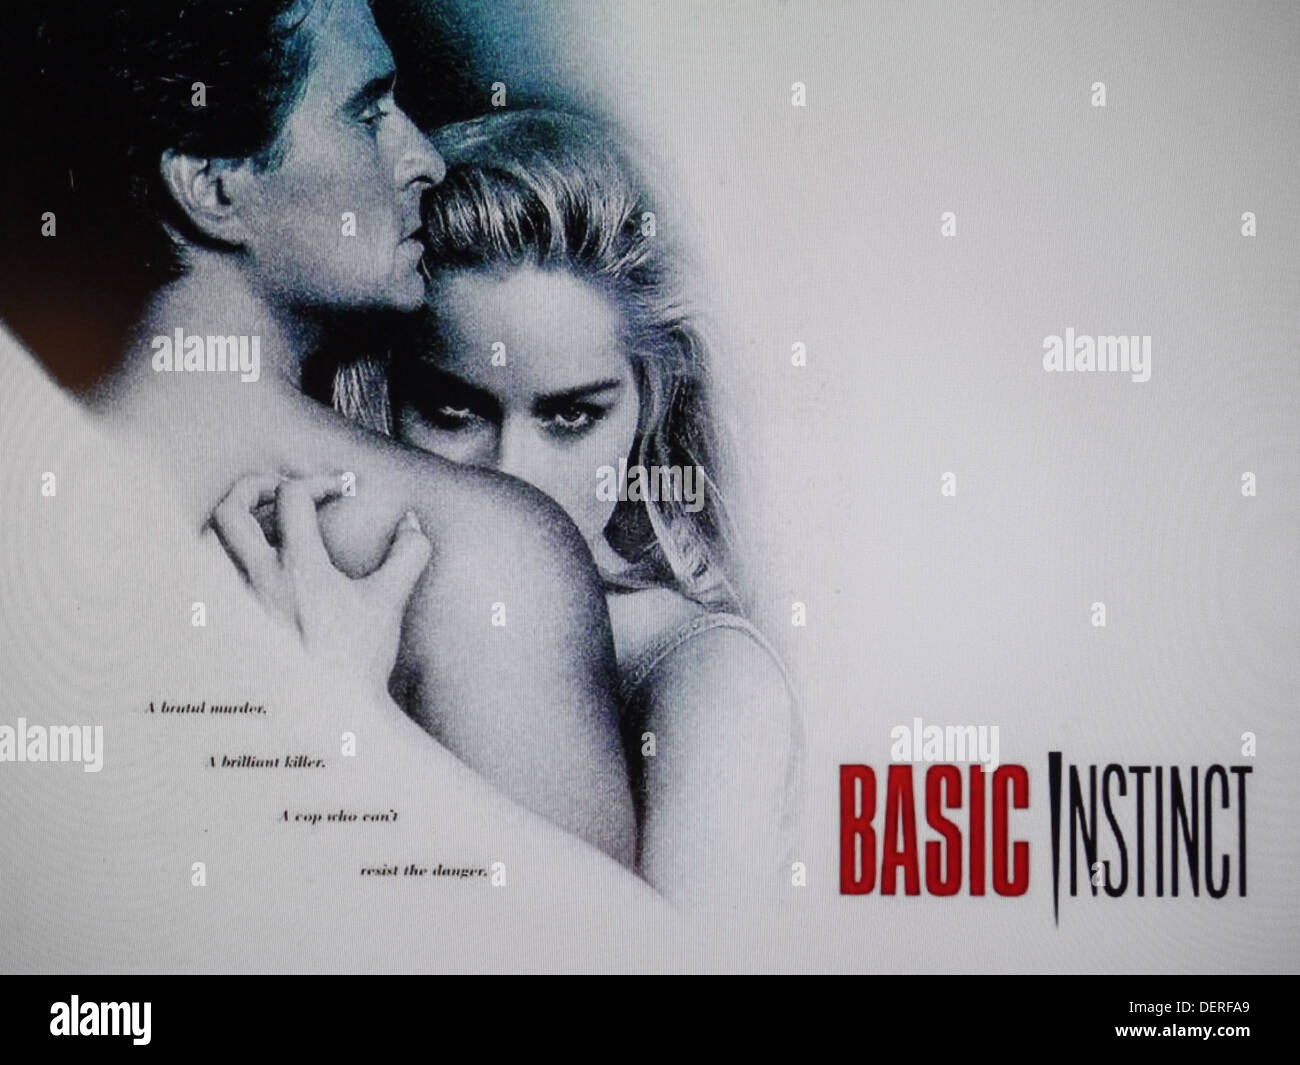 Basic instinct movie Foto Stock